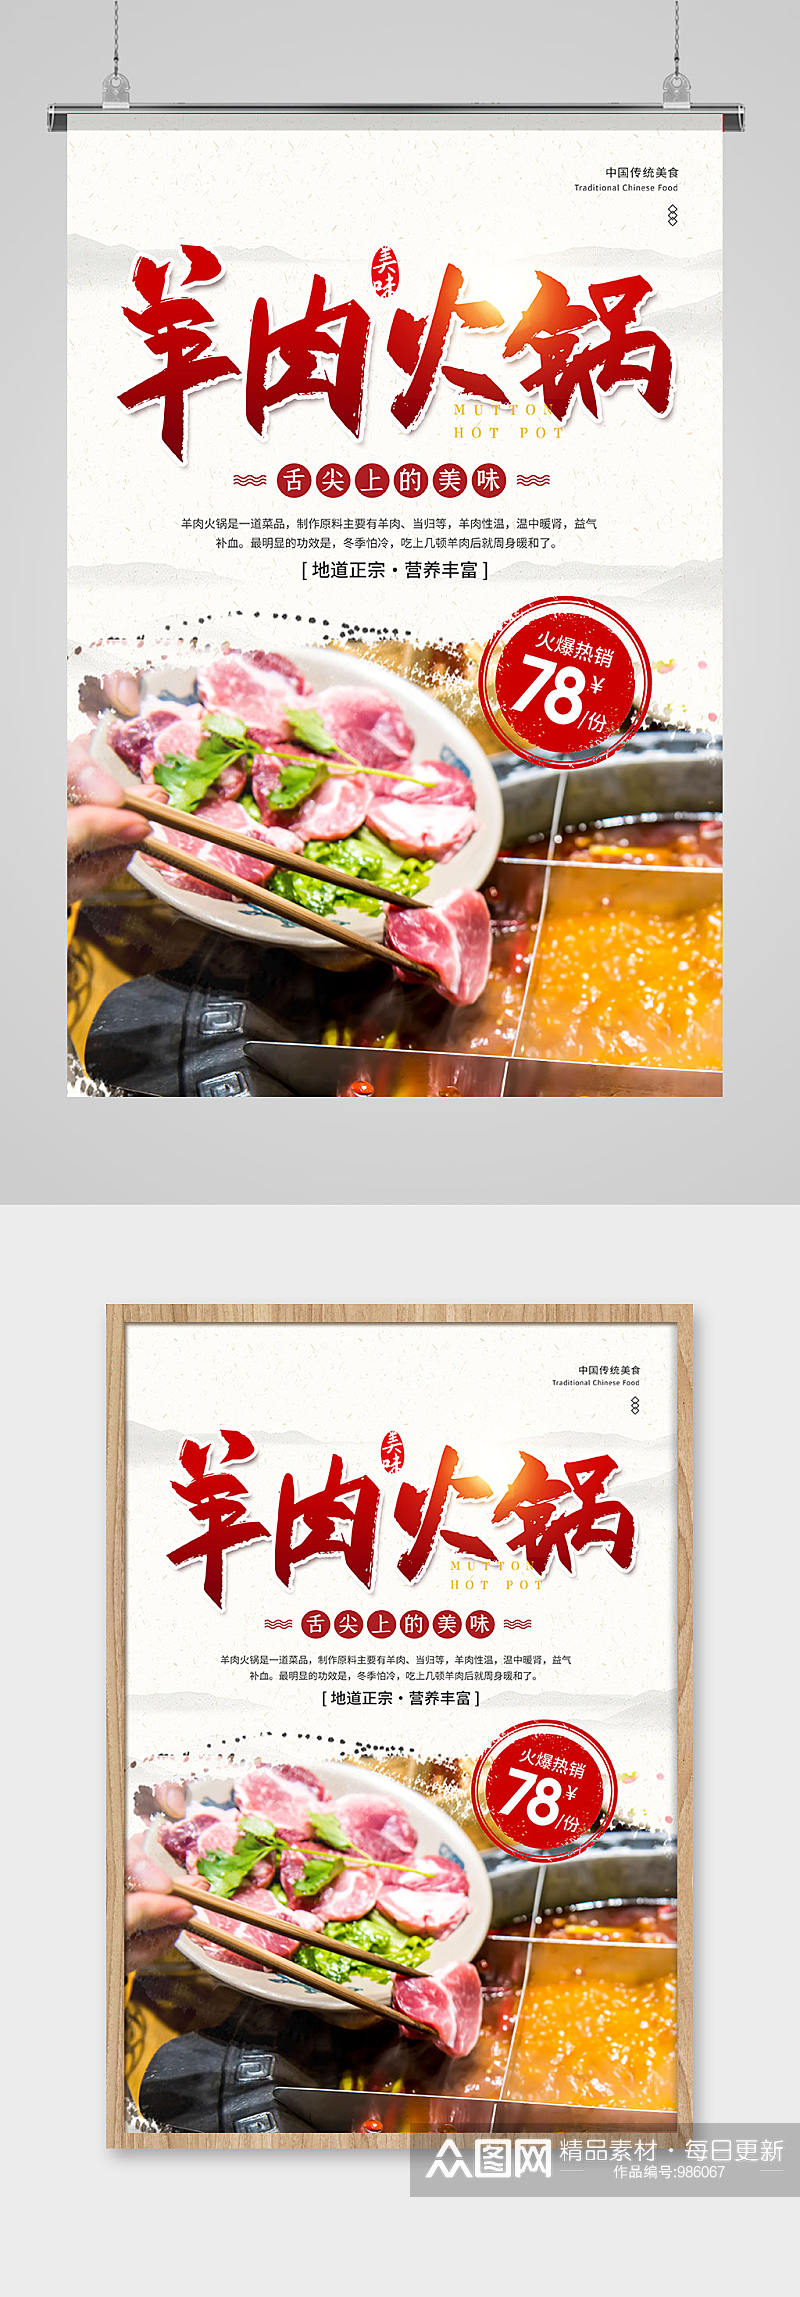 中国风羊肉火锅美食促销宣传海报素材